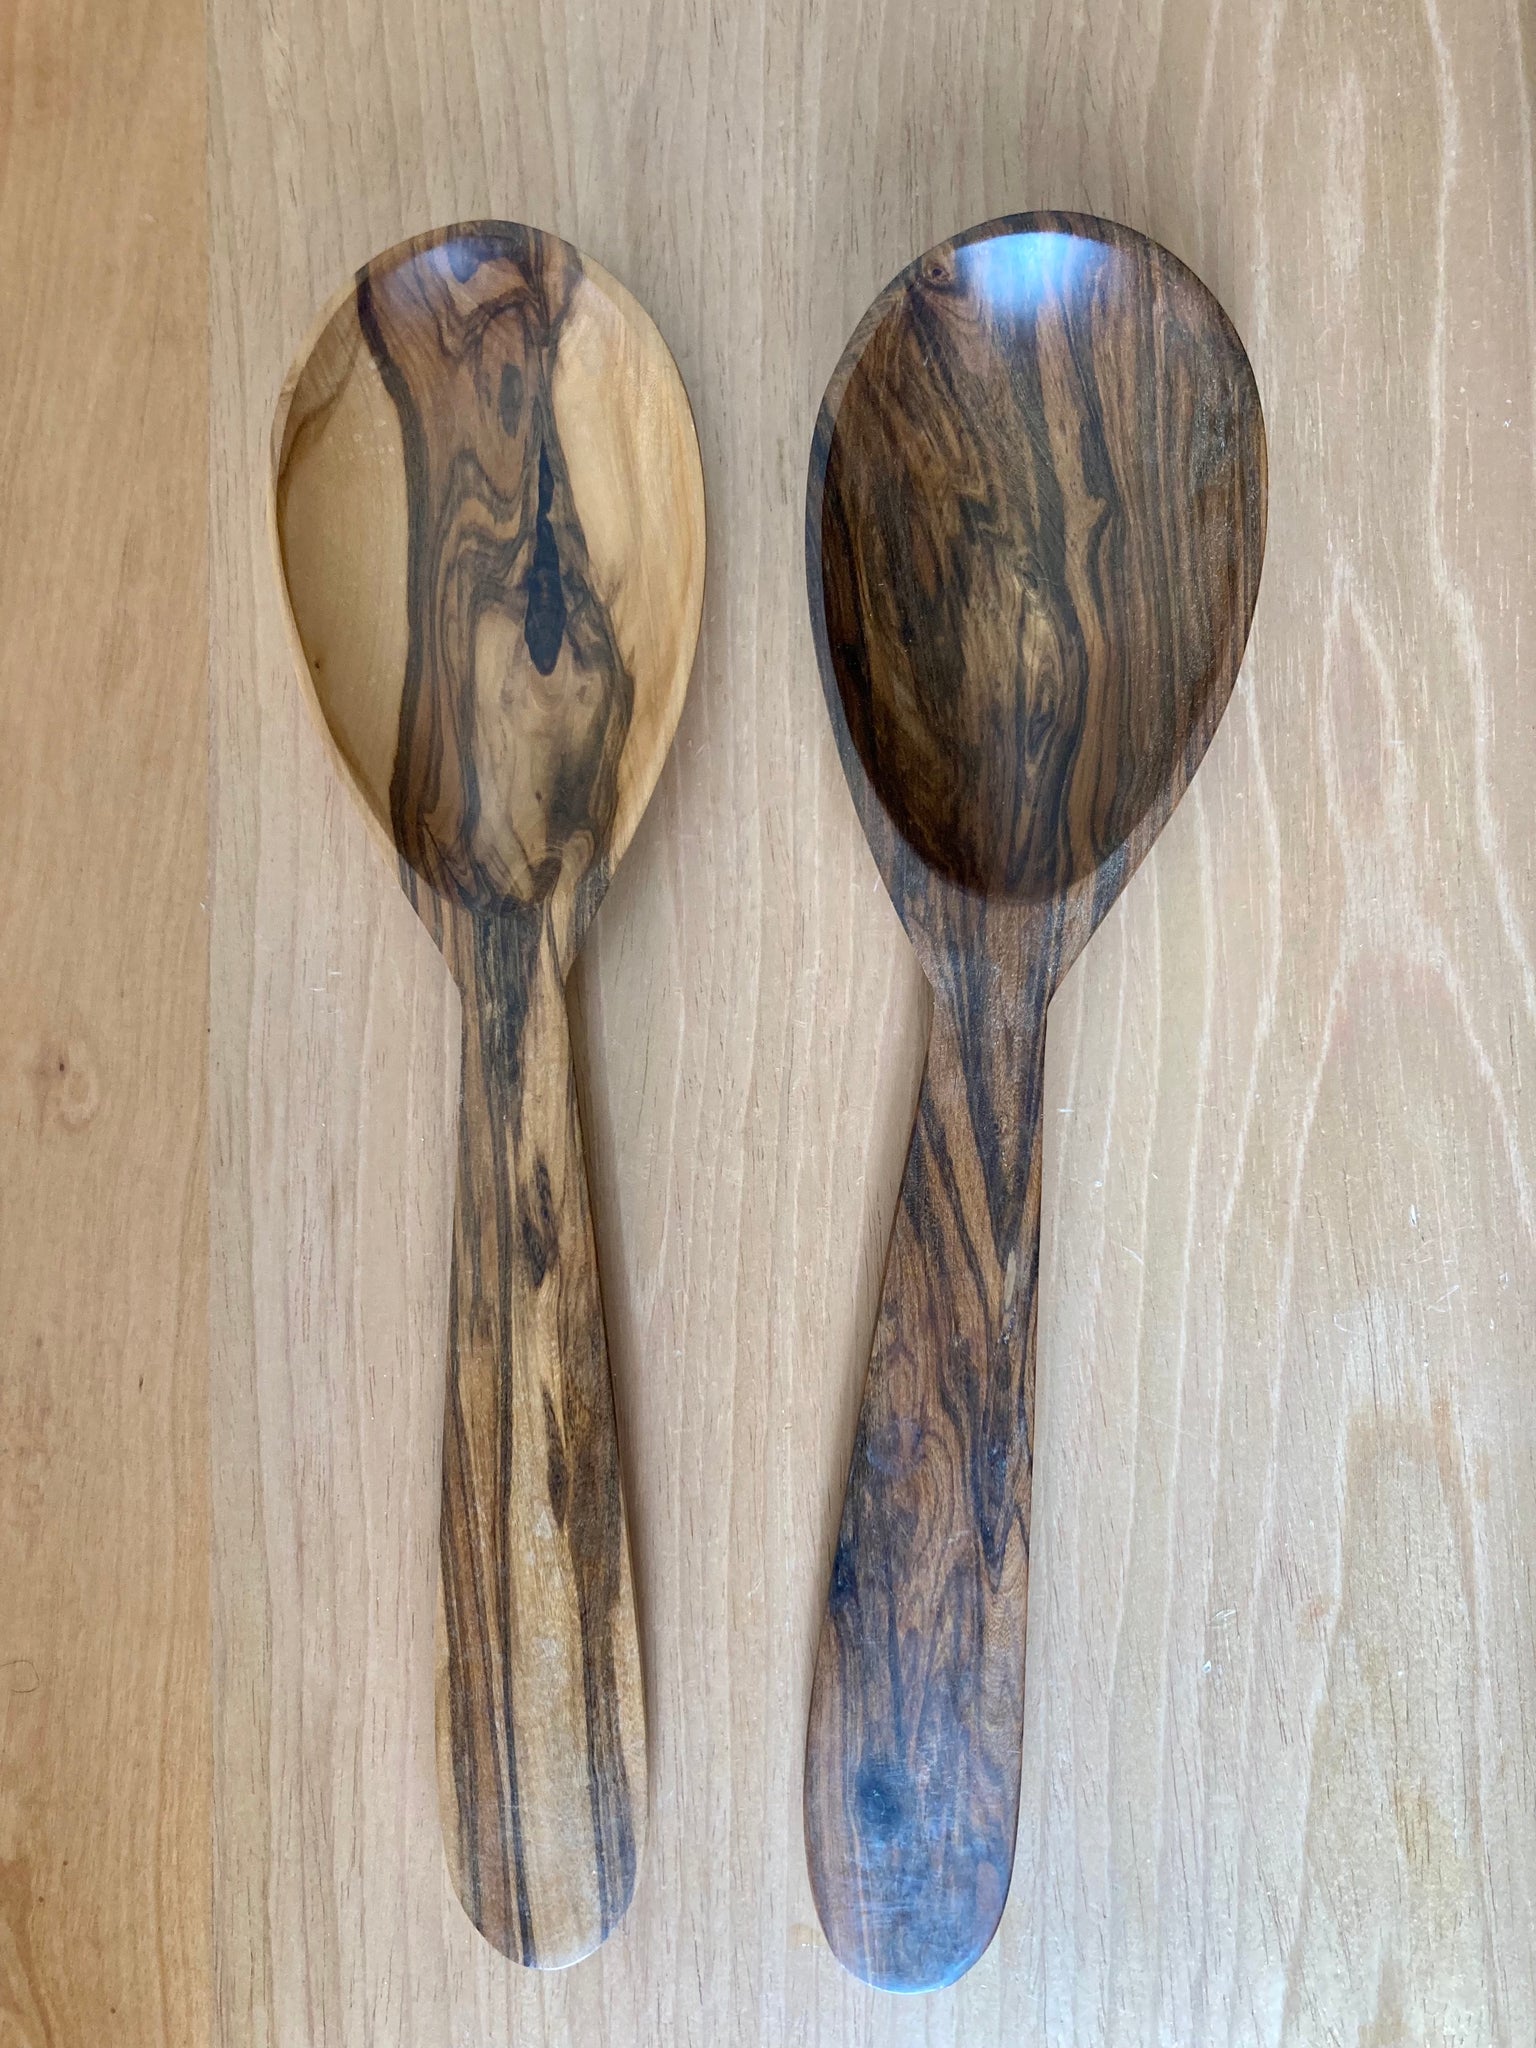 Spoon - Wood M